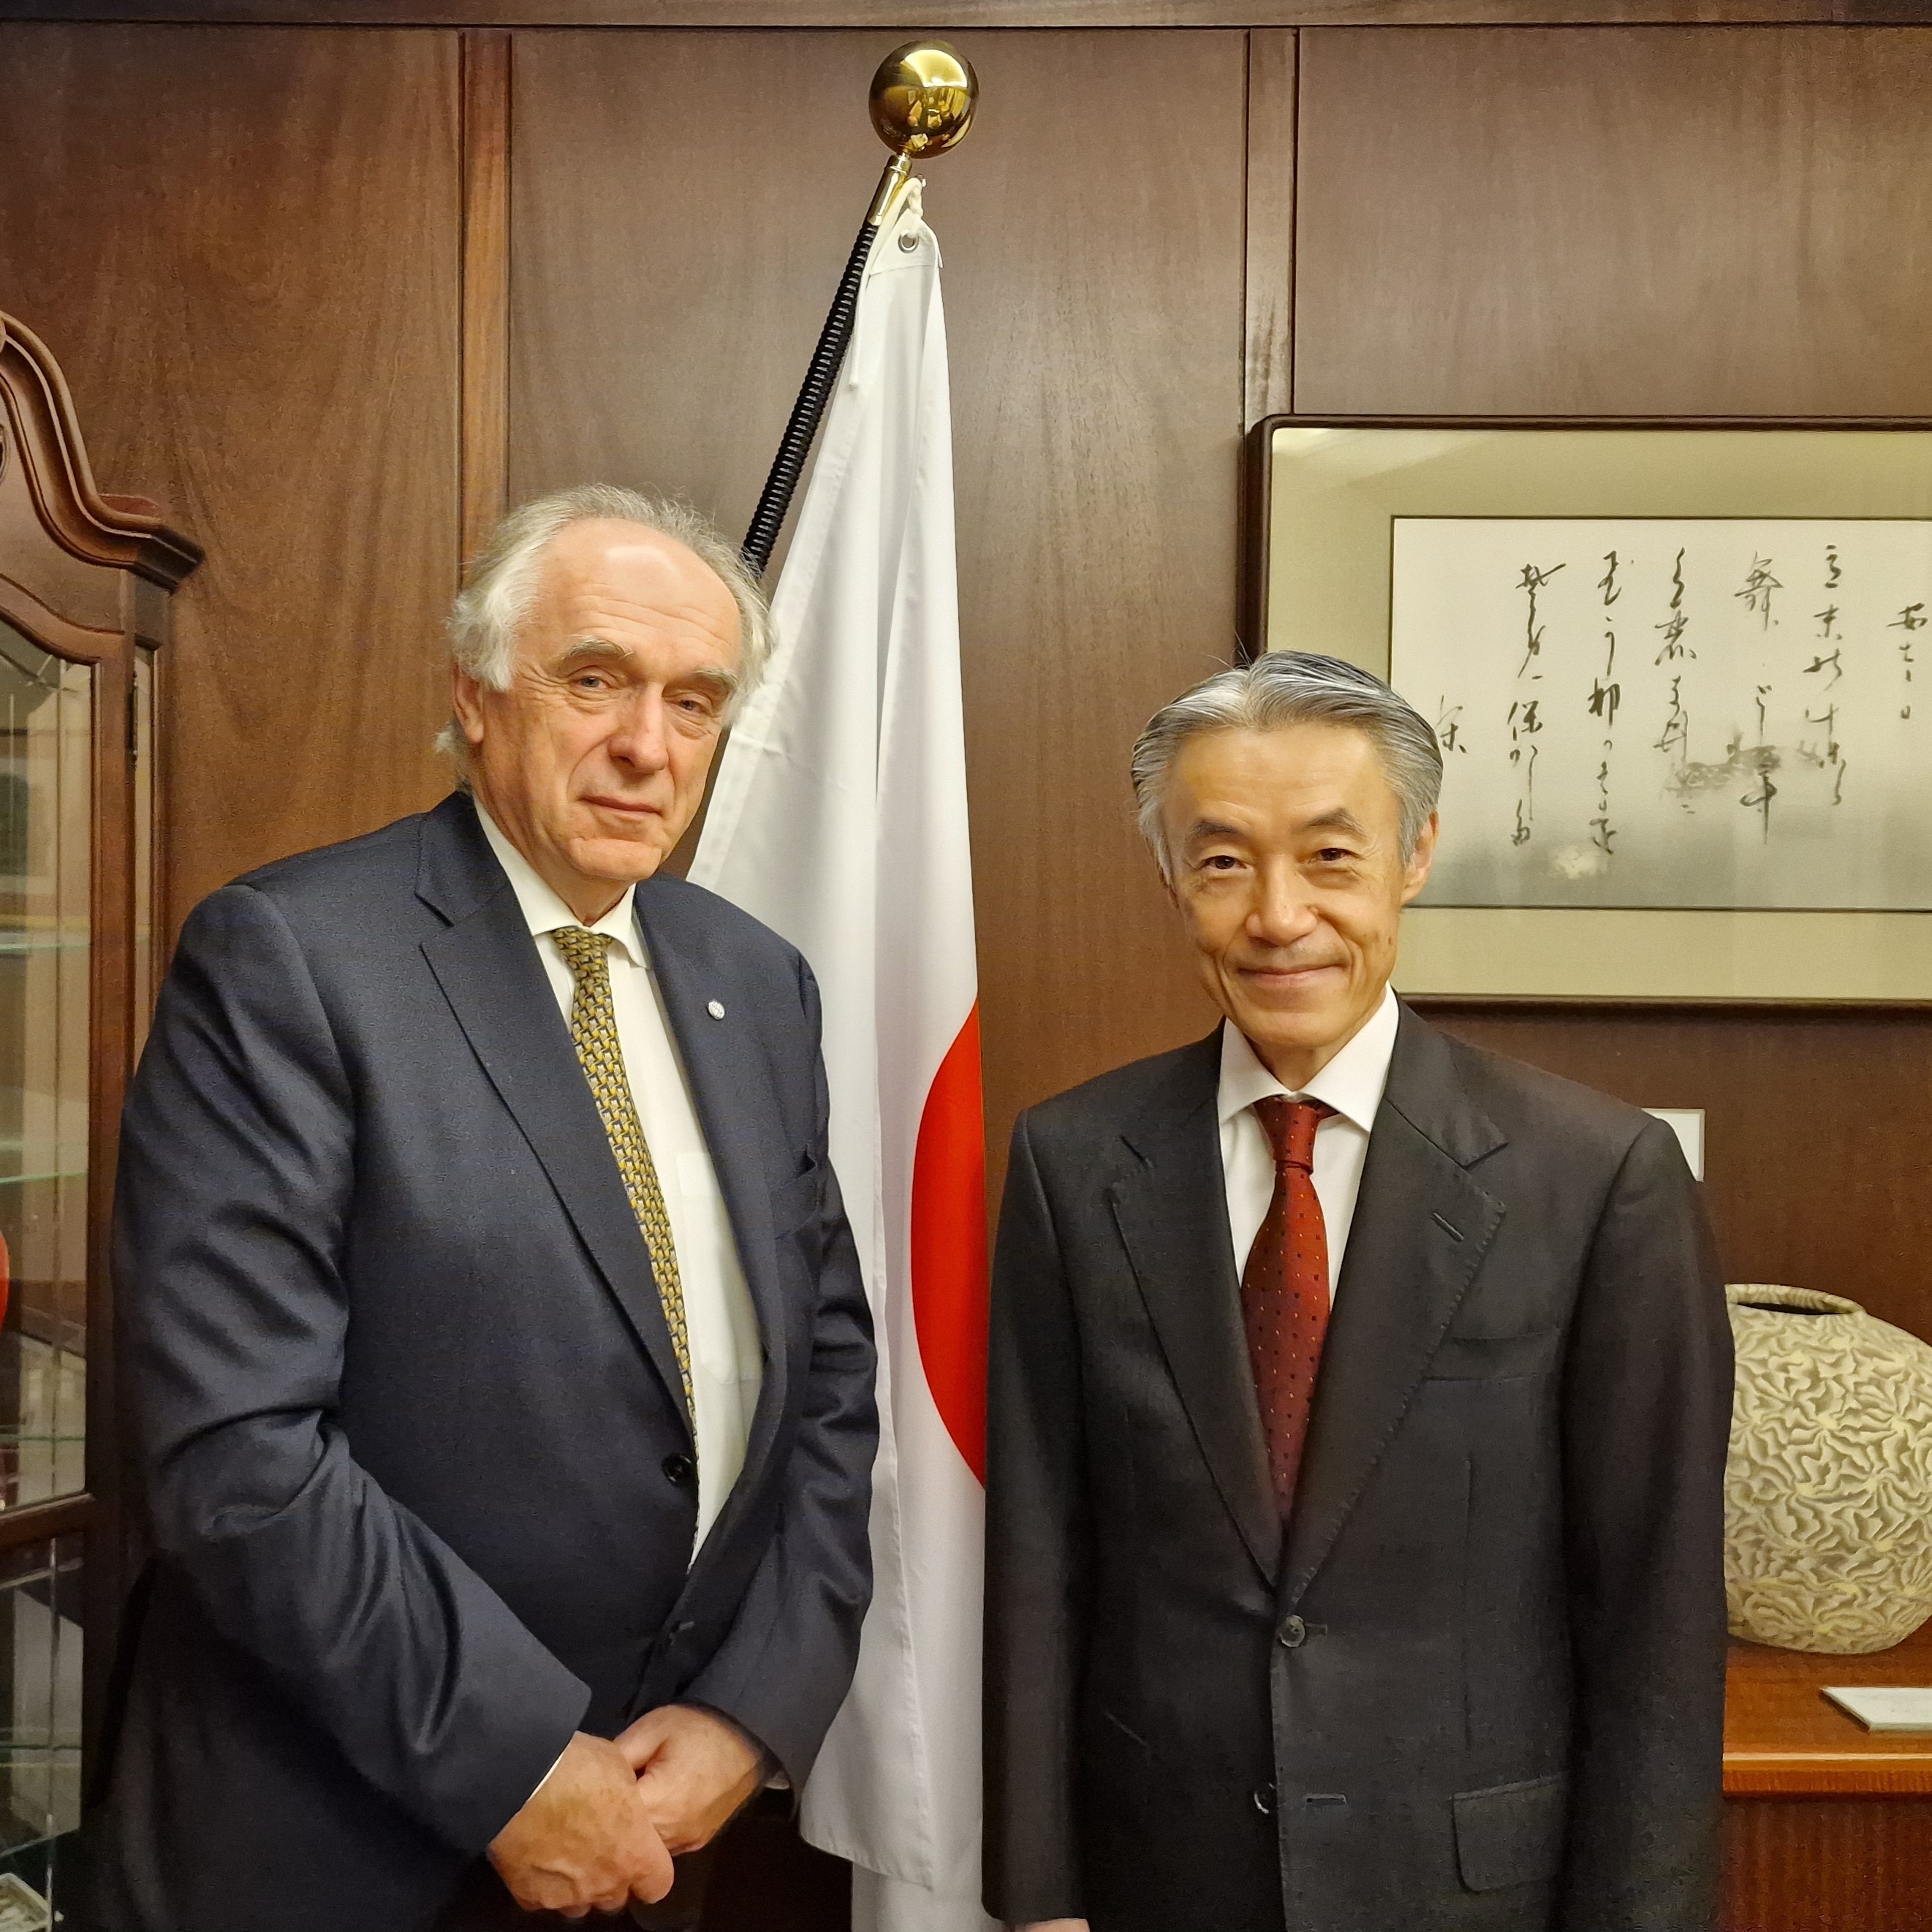 Pavel Kabat, Secretary-General of HFSP, and Shigeo Yamada, Japanese Ambassador to the USA.